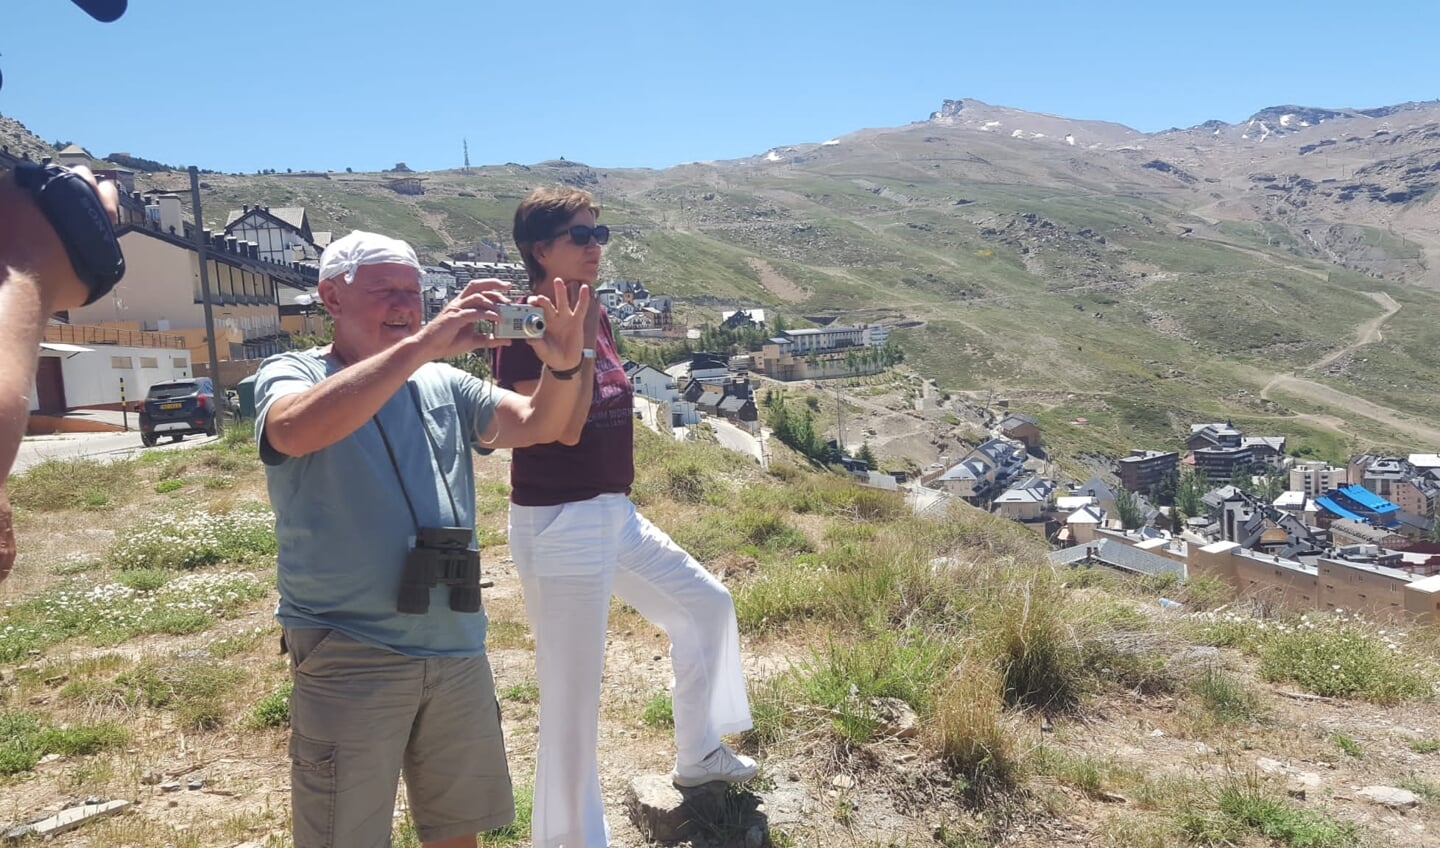 Sjaak Kuypers met Martine van Os op de Sierra Nevada in Zuid-Spanje.